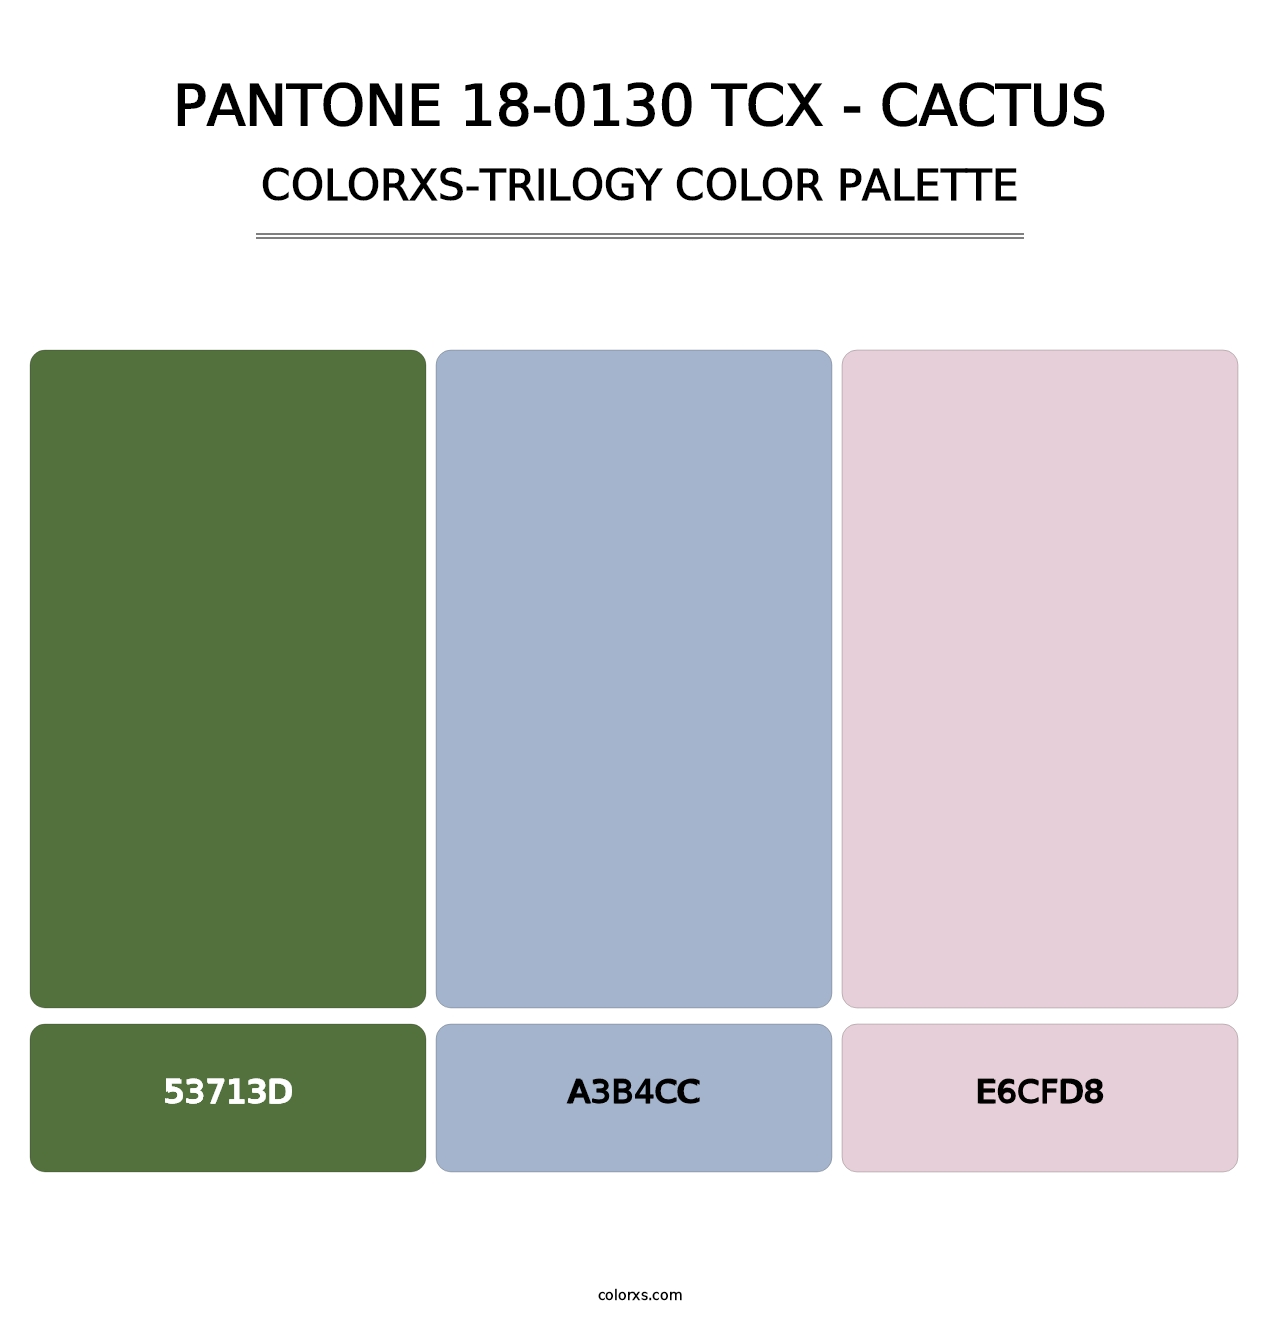 PANTONE 18-0130 TCX - Cactus - Colorxs Trilogy Palette